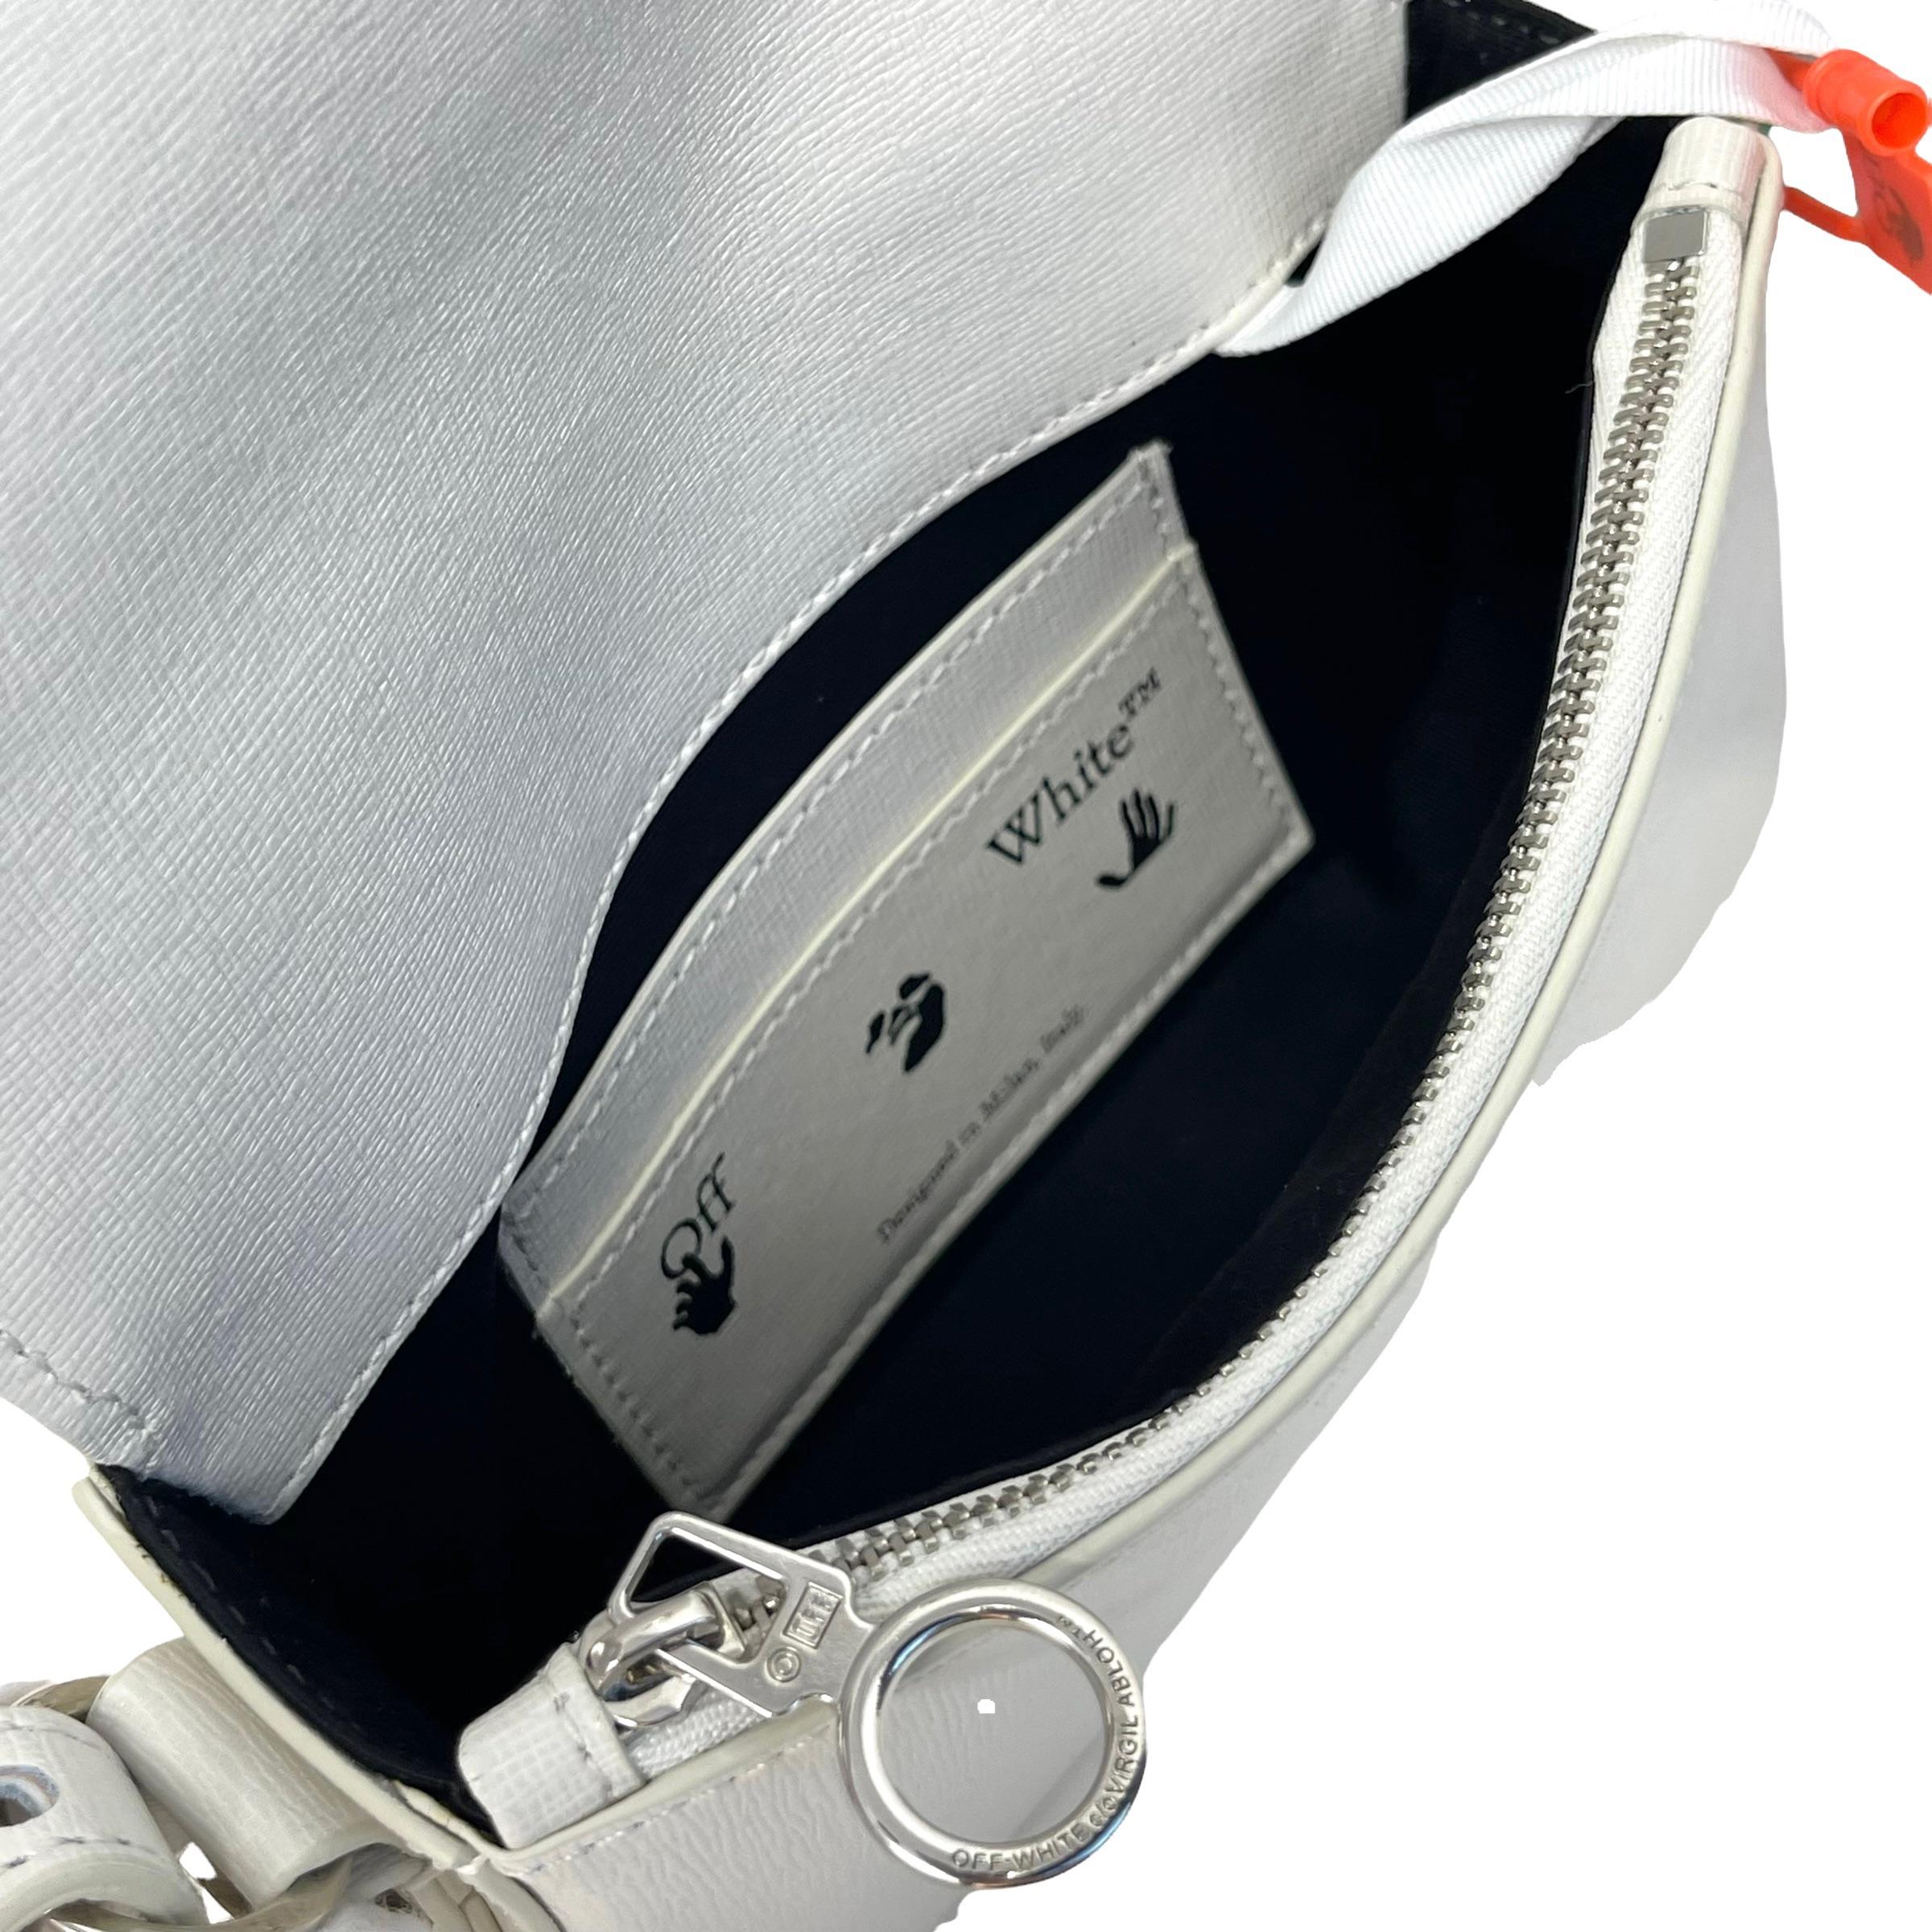 NEW Off-White Virgil Abloh White Diagonal Stripes Binder Leather Shoulder Bag For Sale 3